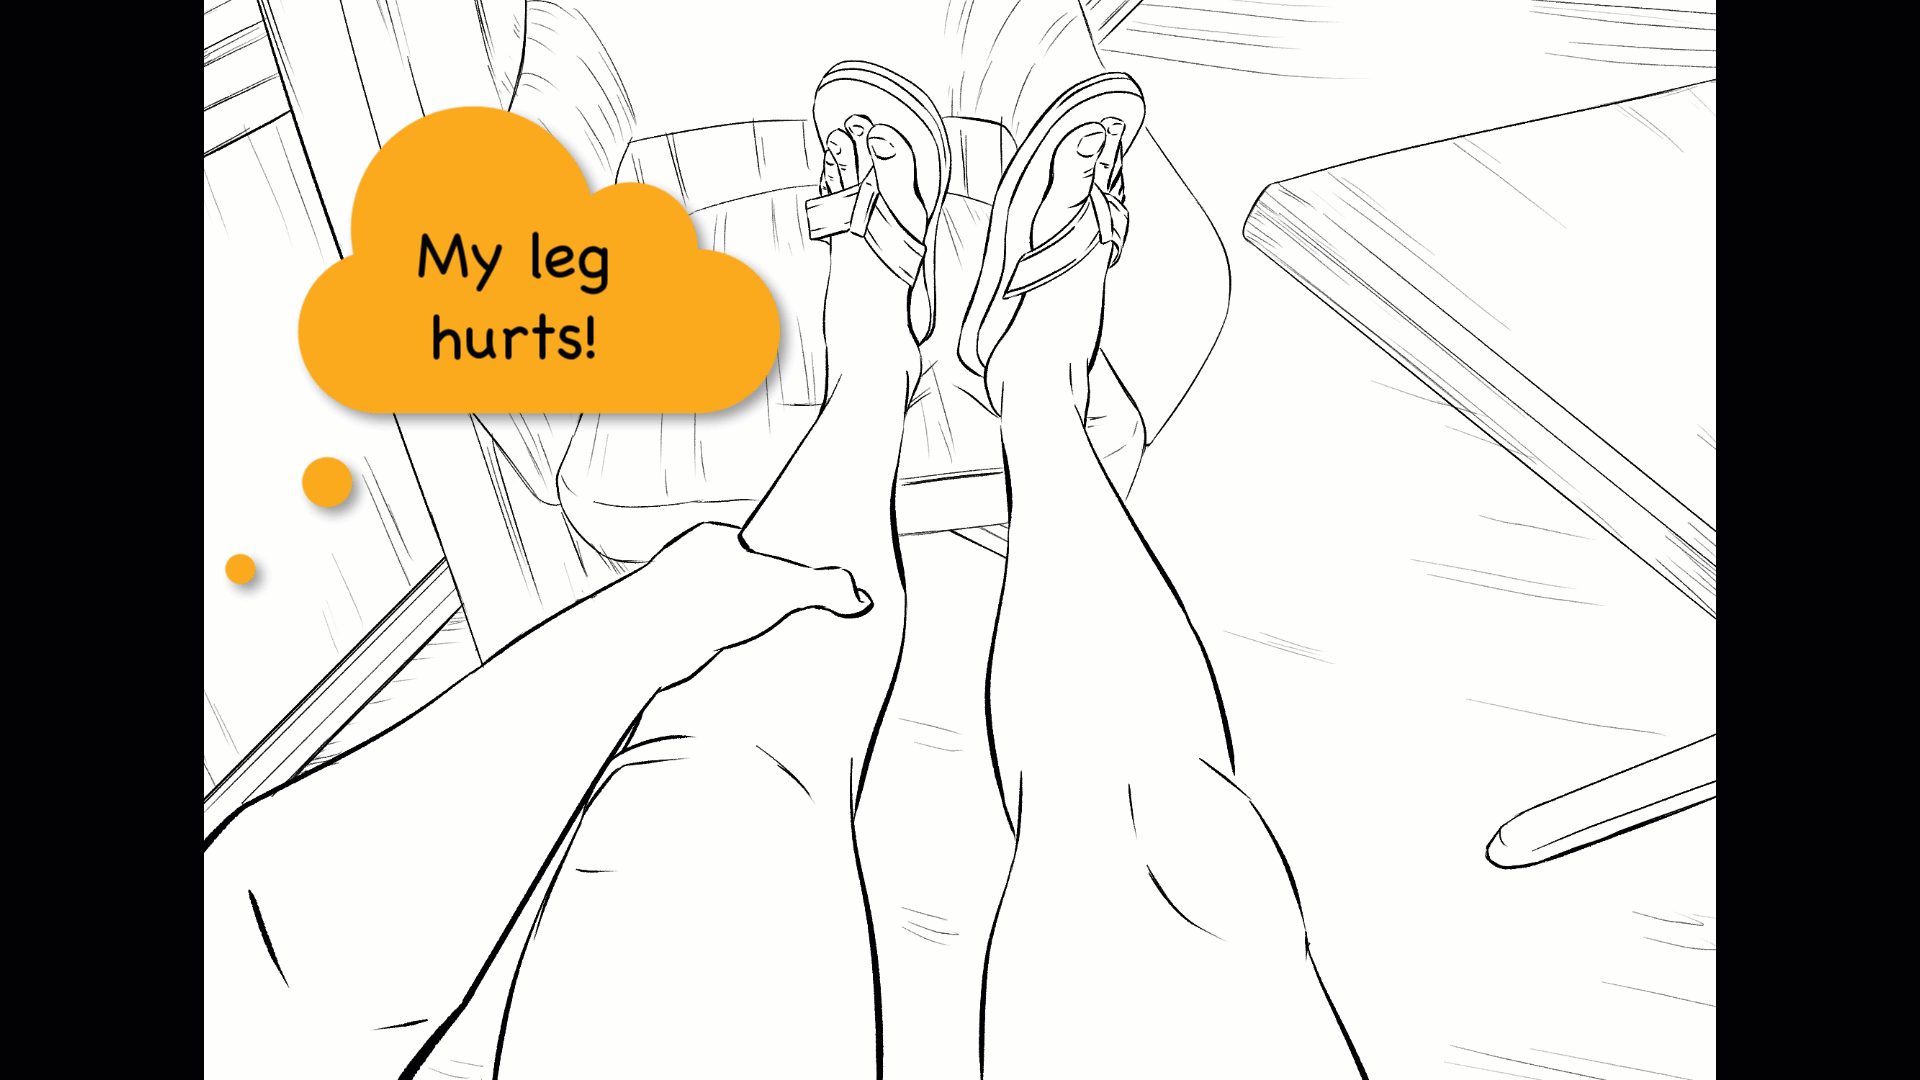 Leg pain